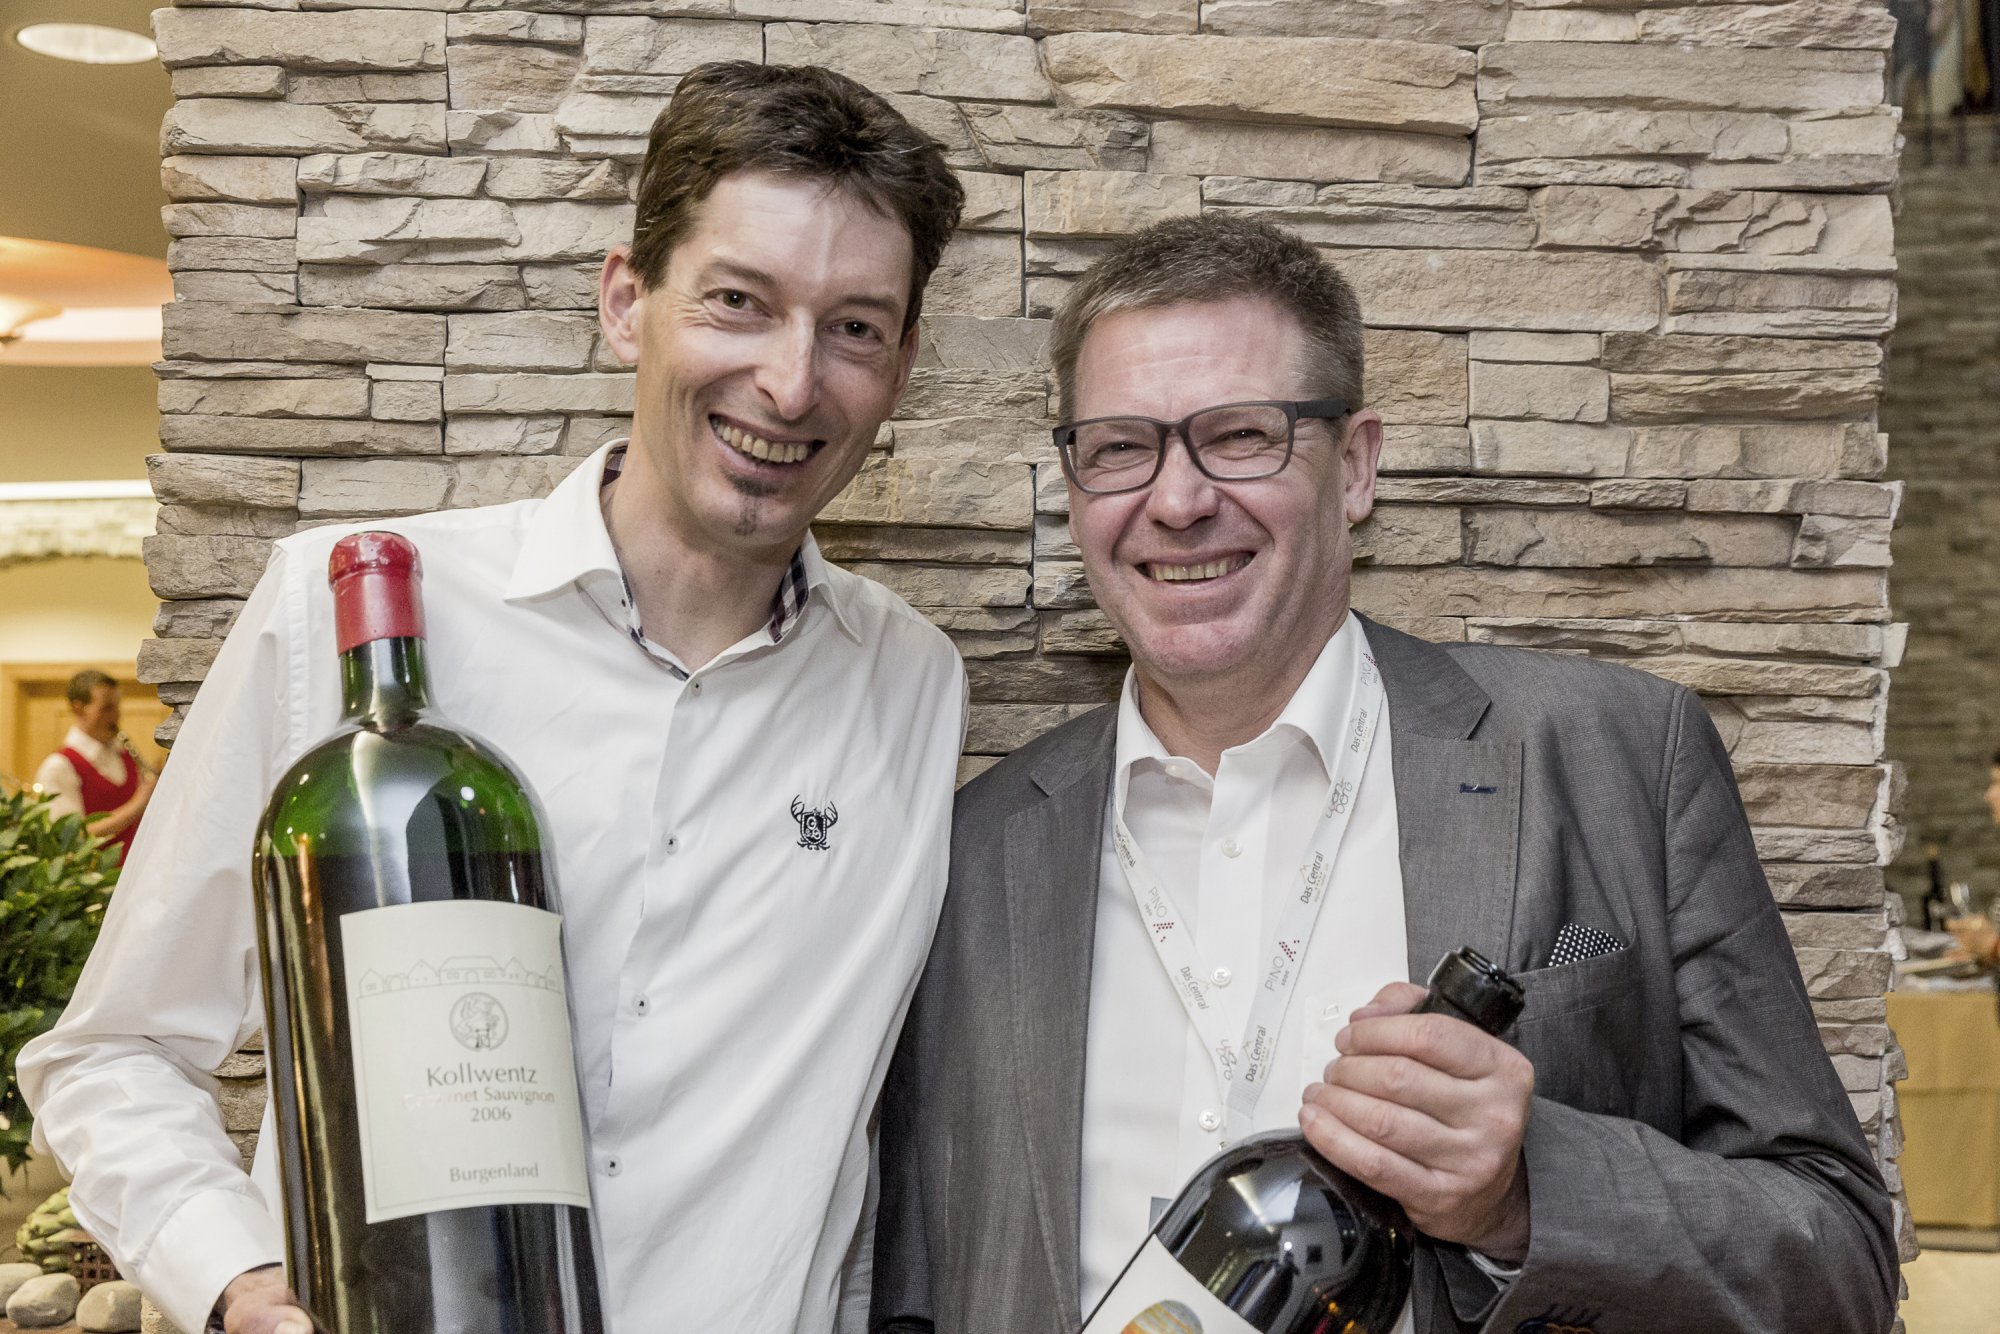 Andi Kollwentz & Wolfgang Reisner have fun at Wein am Berg